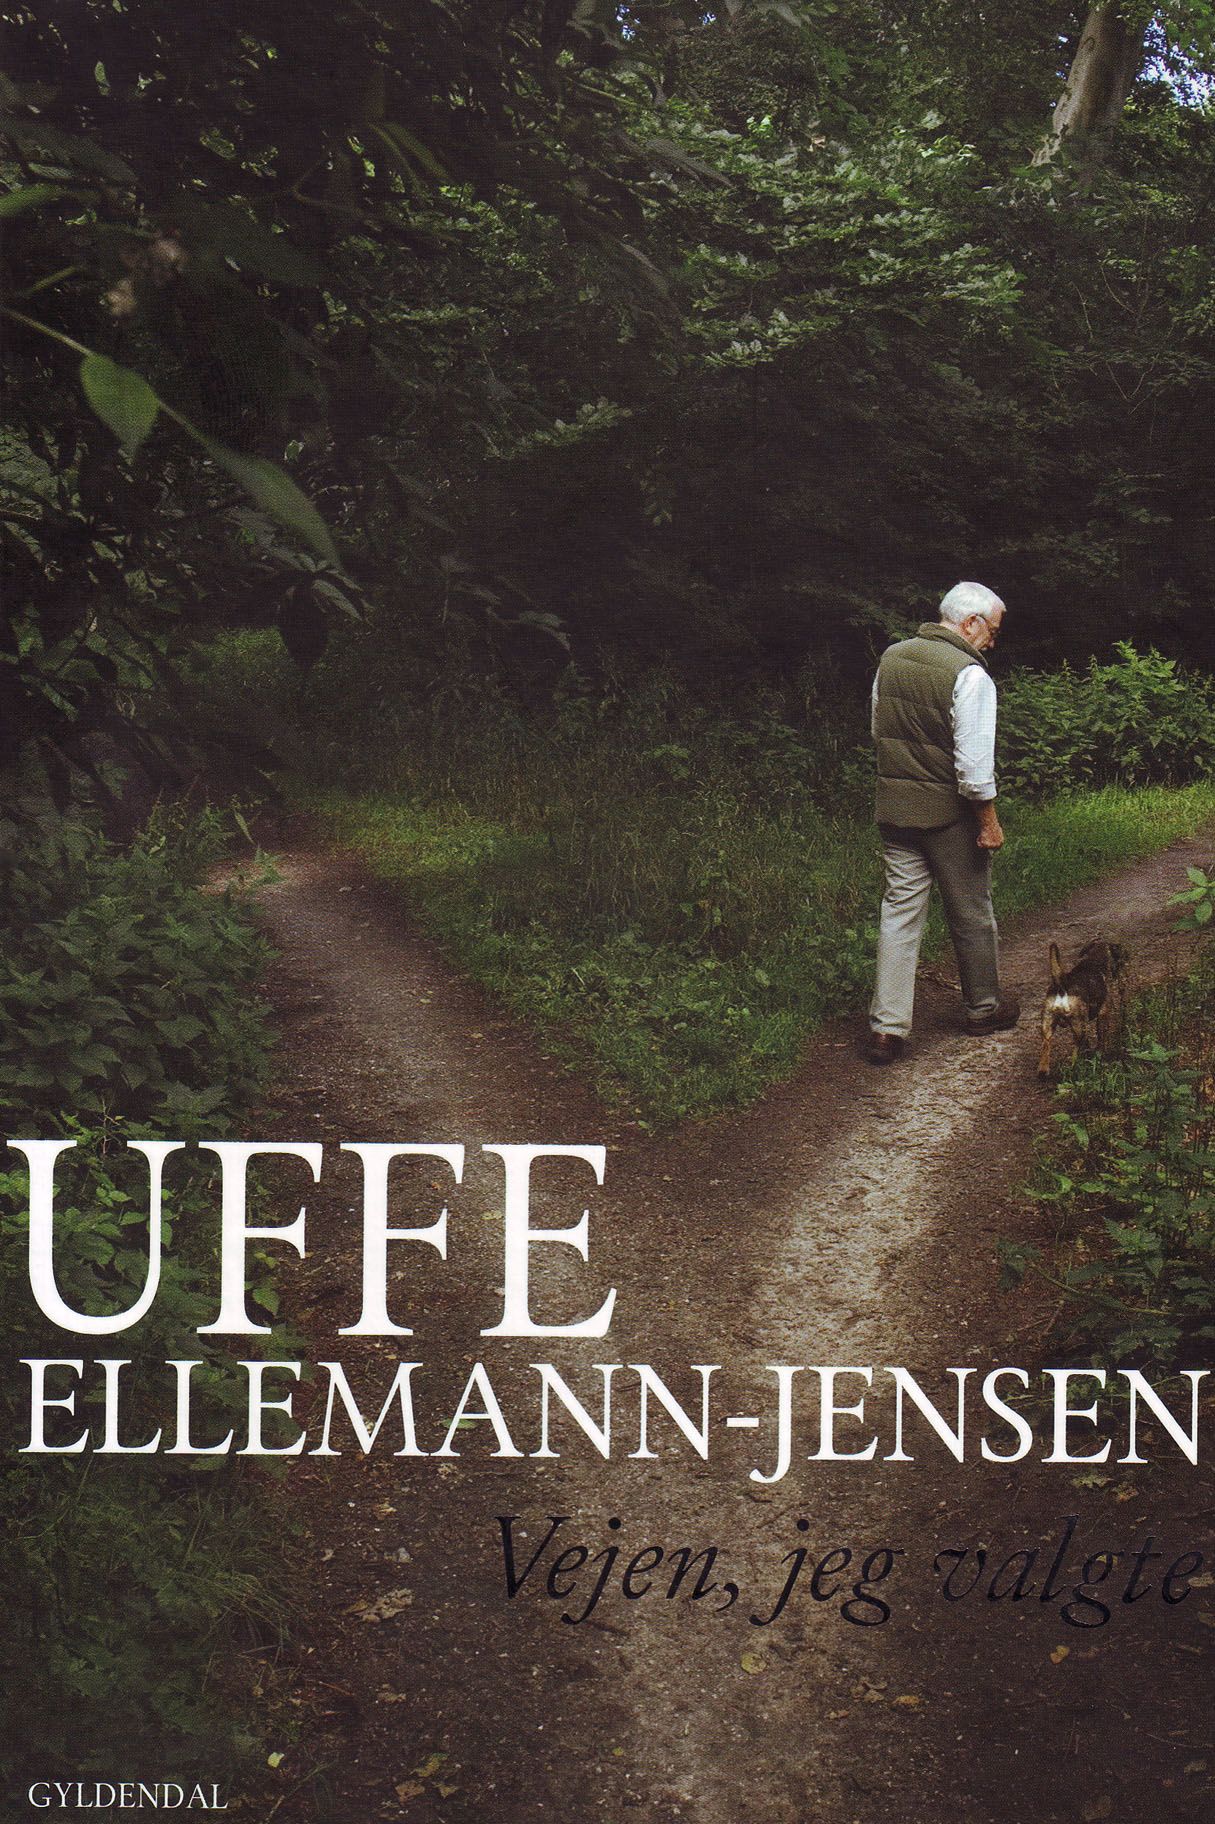 Vejen, jeg valgte, e-bok av Uffe Ellemann-Jensen